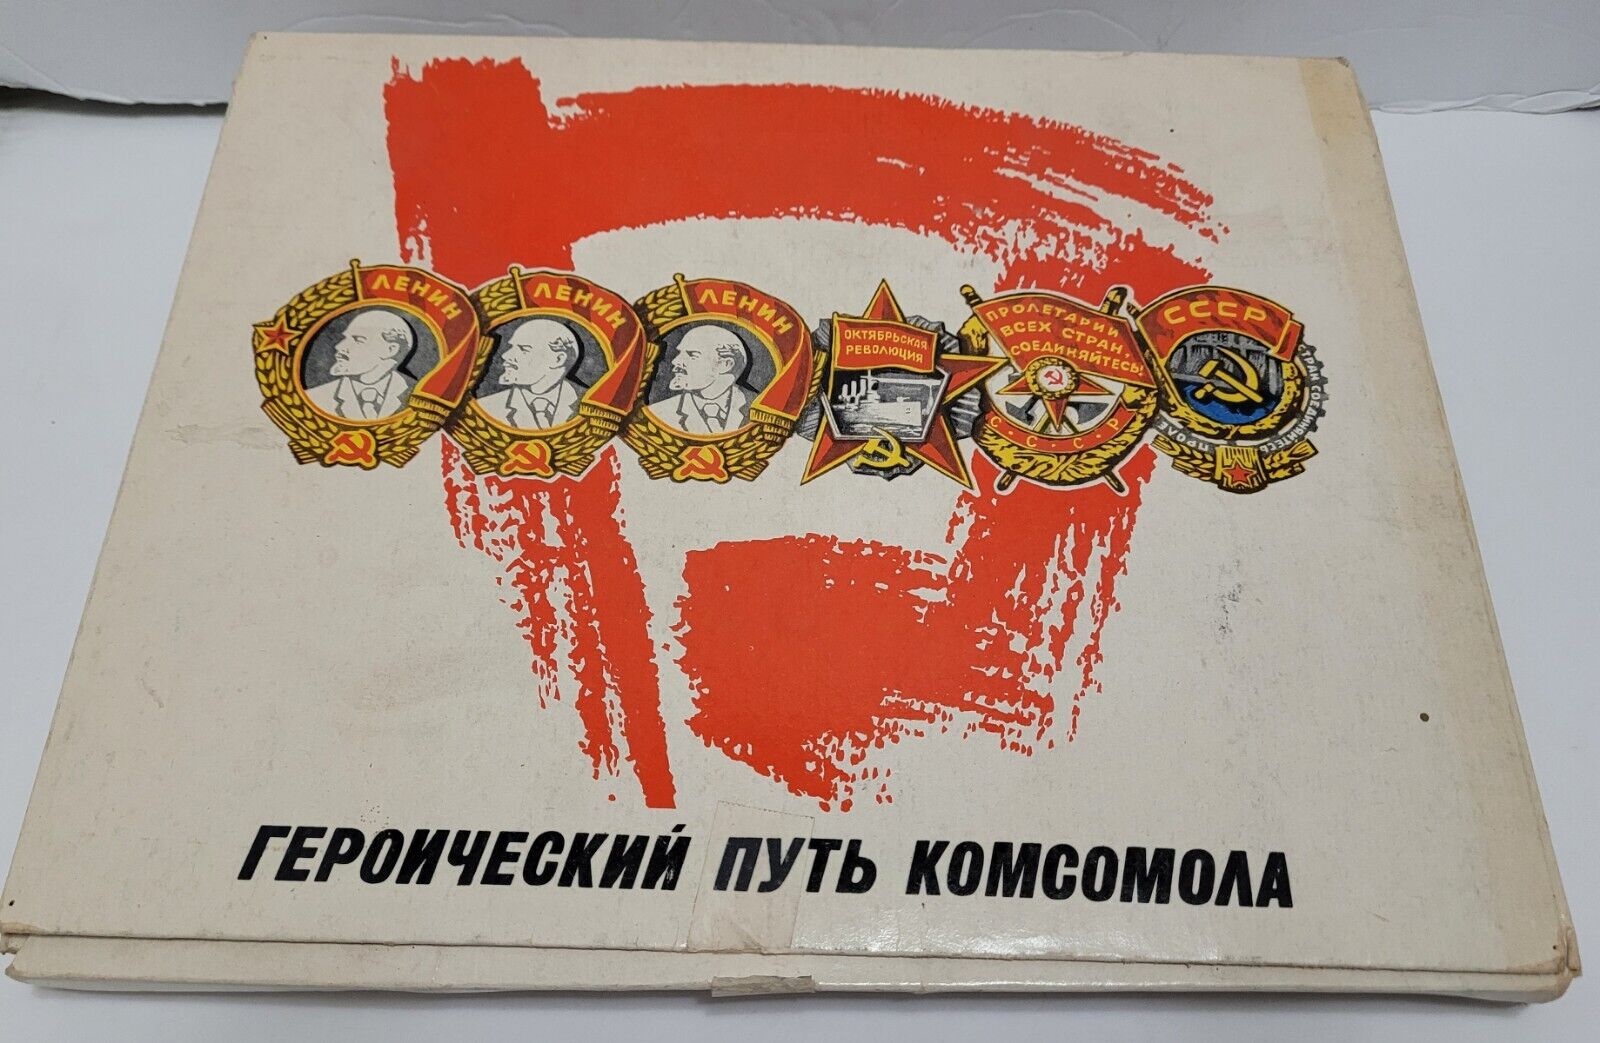 RARE VINTAGE RUSSIAN COMMUNIST PARTY PROPAGANDA MATCHBOX SET ***COMPLETE SET***